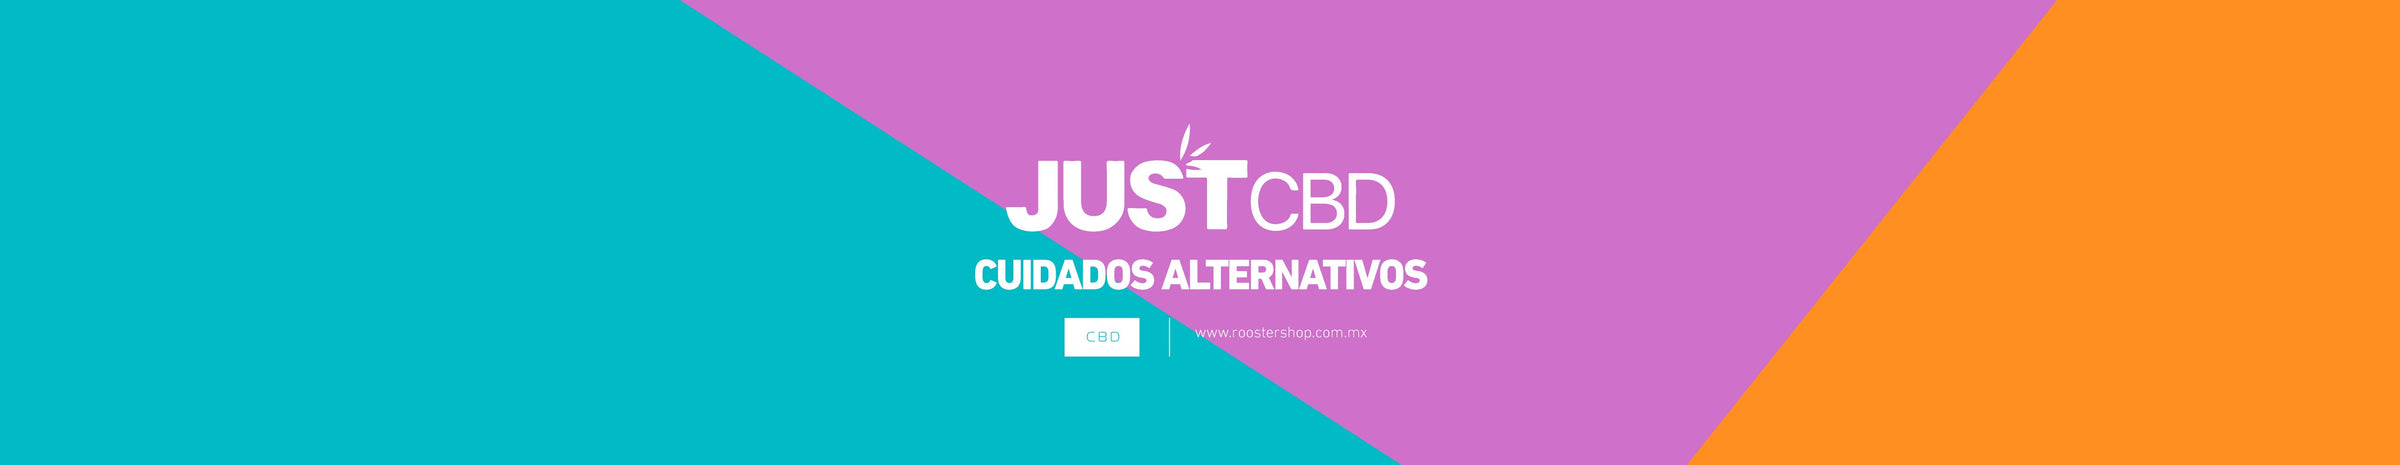 CBD Cuidados alternativos JustCBD Mexico